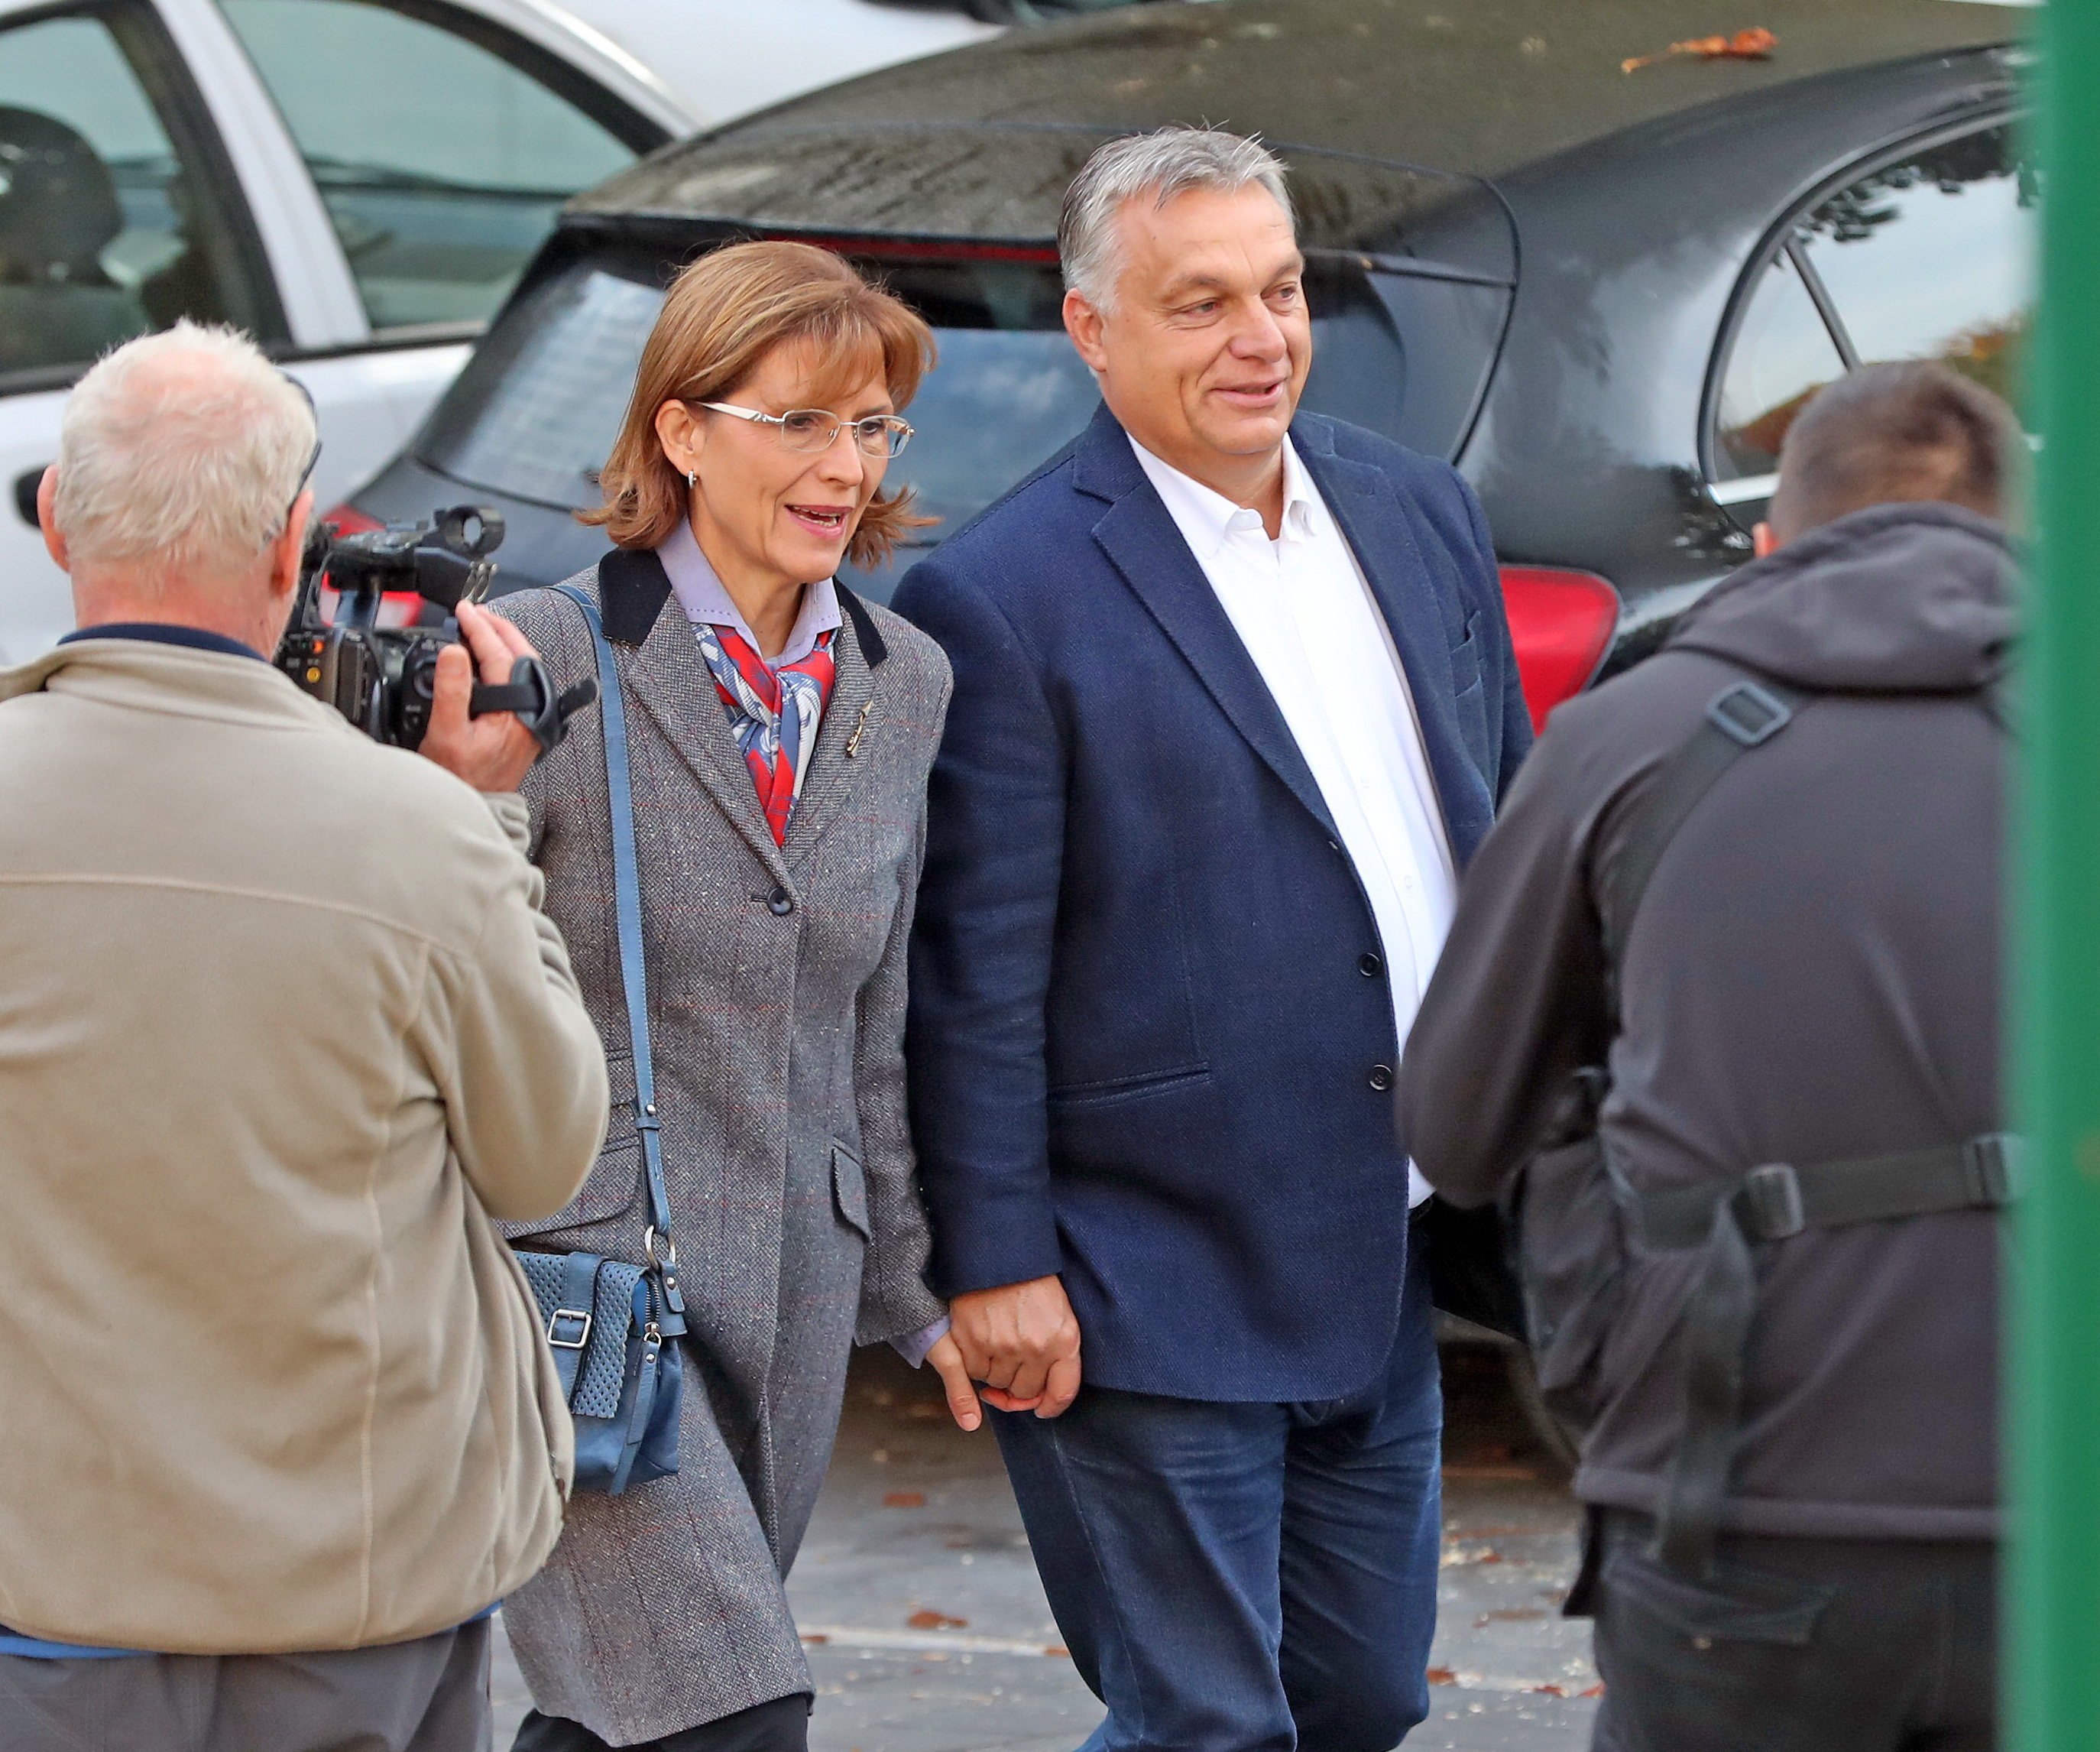 Orbán Viktor és felesége leadták szavazatukat - fotókon a korai szavazás -  Blikk